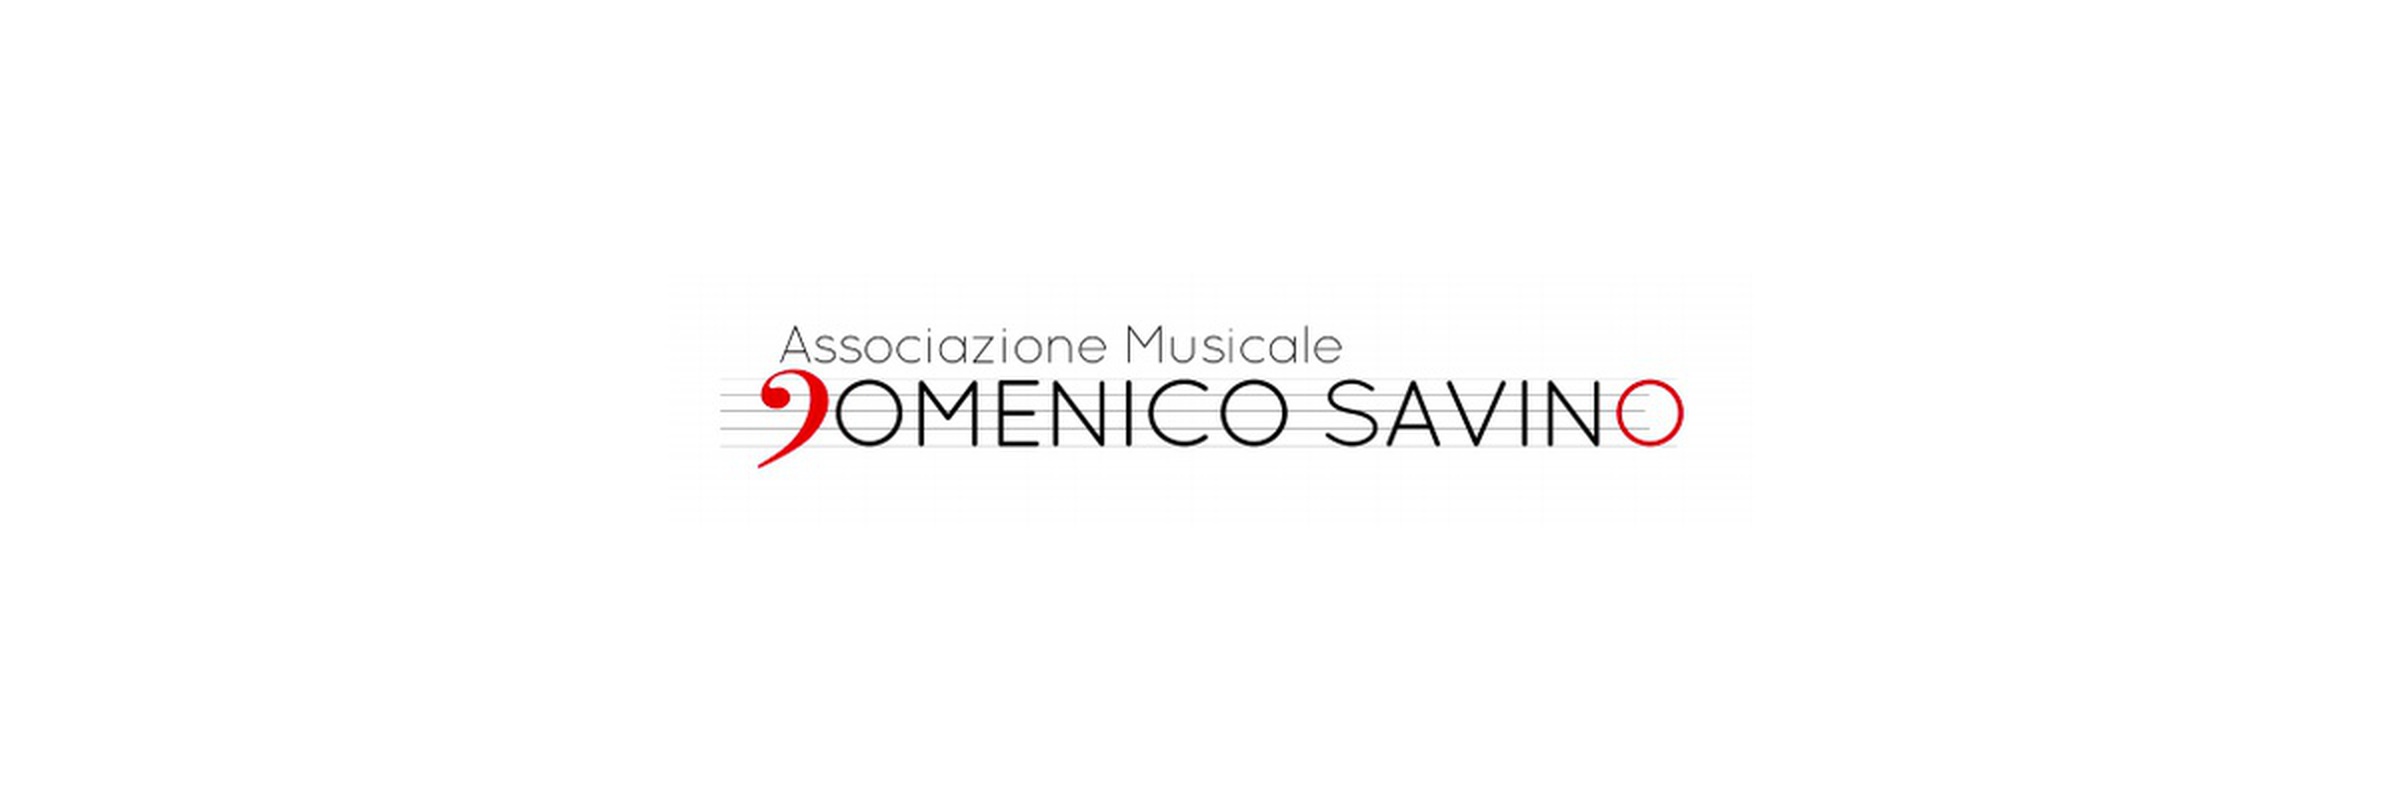 Musical Association Domenico Savino - Bruno Canino and Giuseppe Greco